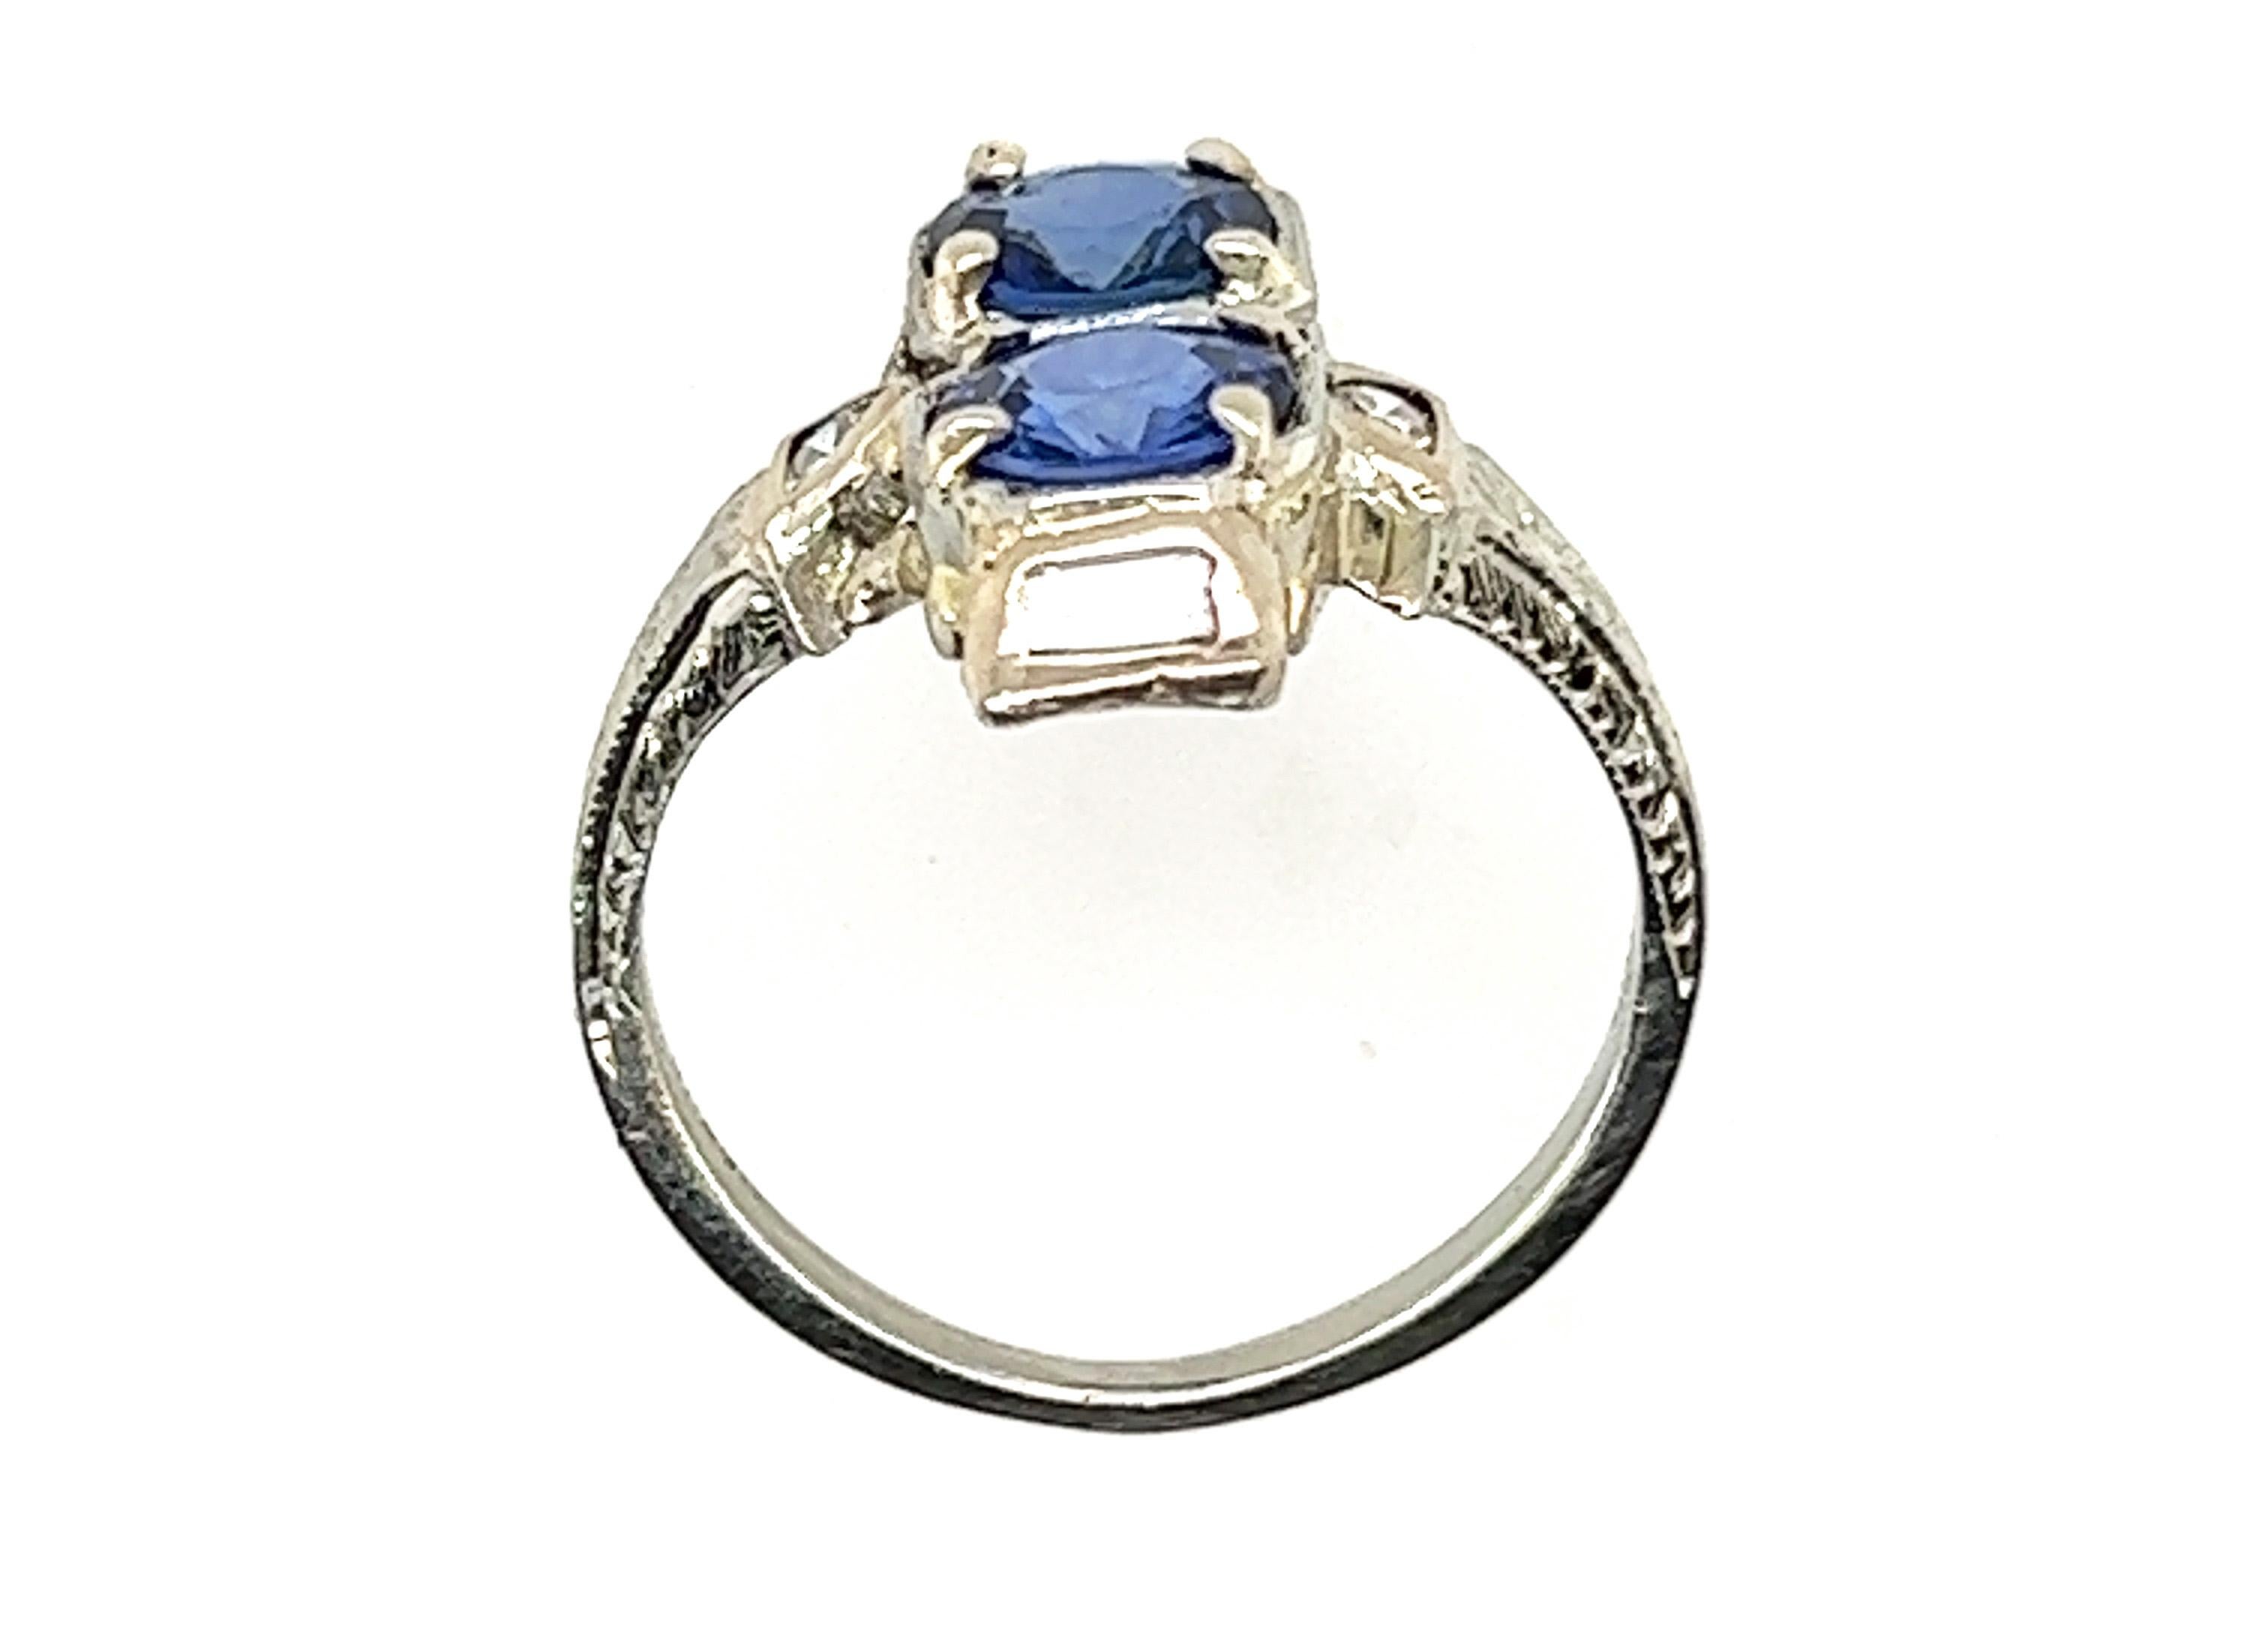 Genuine Original Antique from 1920s Two Stone Sapphire Diamond Cocktail Ring 2ct 18K White Gold Art Deco


2 saphirs bleus naturels de 5,7 mm, brillants et audacieux 

Saphirs et diamants 100% naturels 

Pièce de marque

1.94 carats de pierres